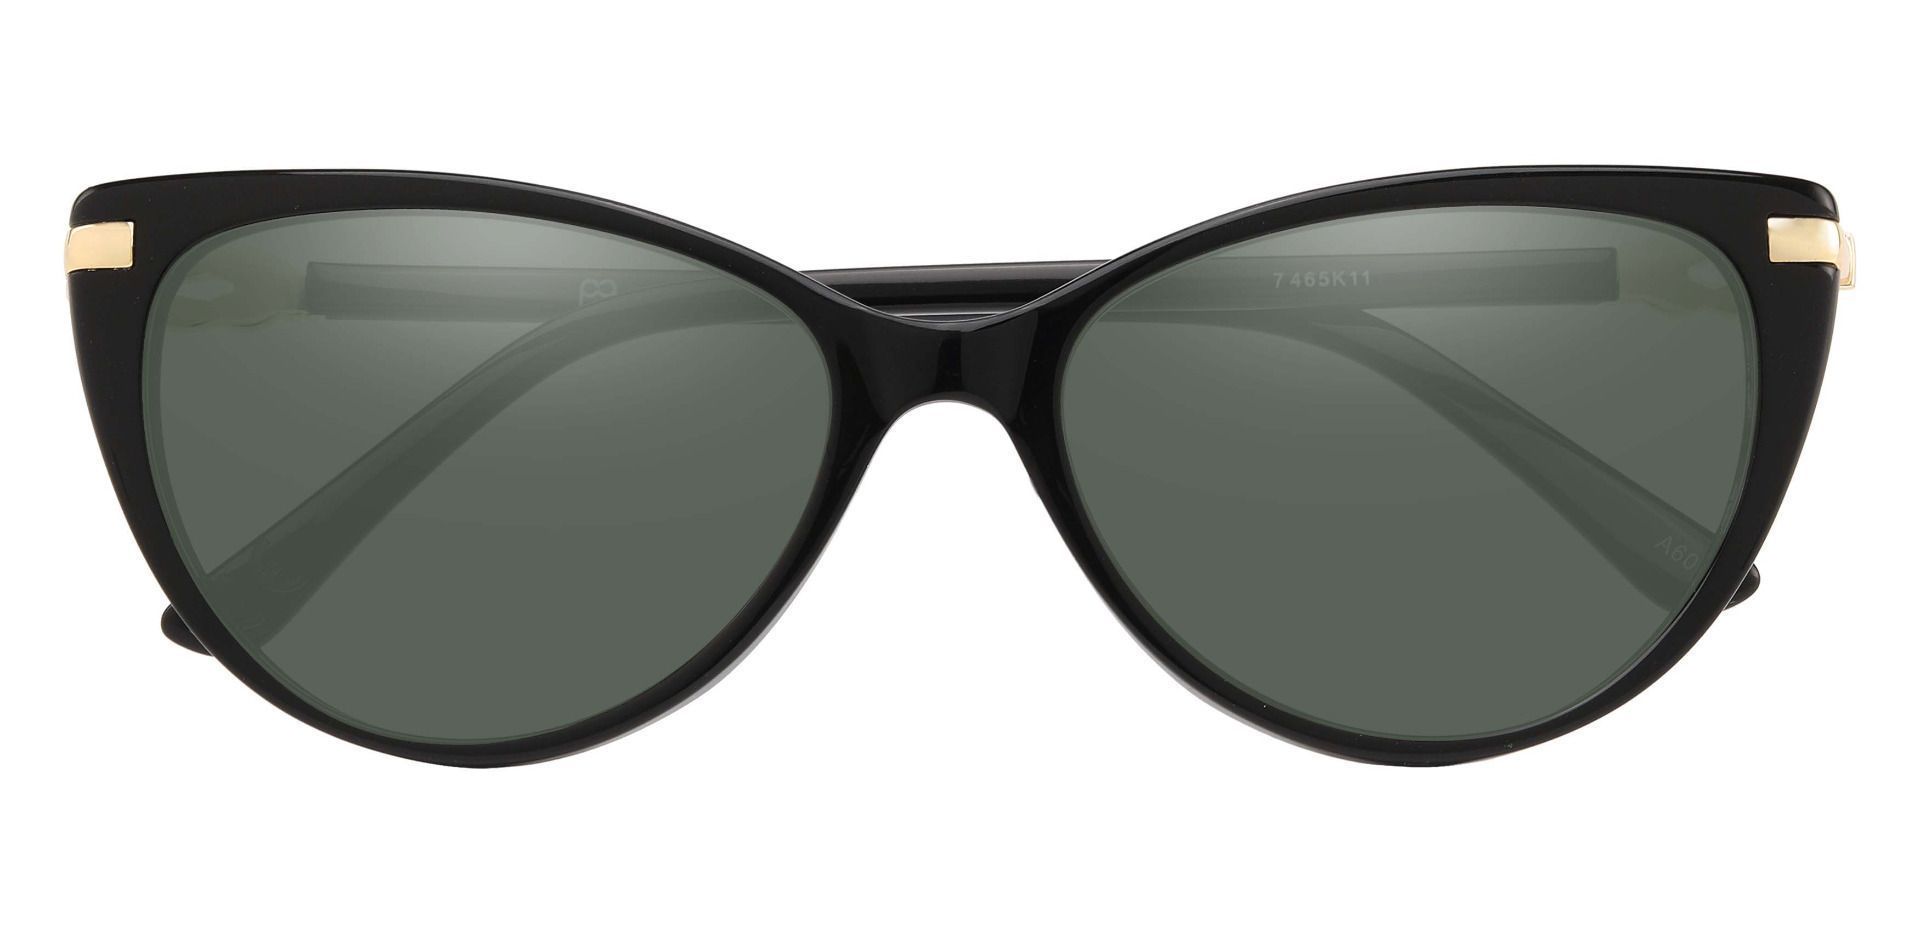 Starla Cat Eye Reading Sunglasses - Black Frame With Green Lenses